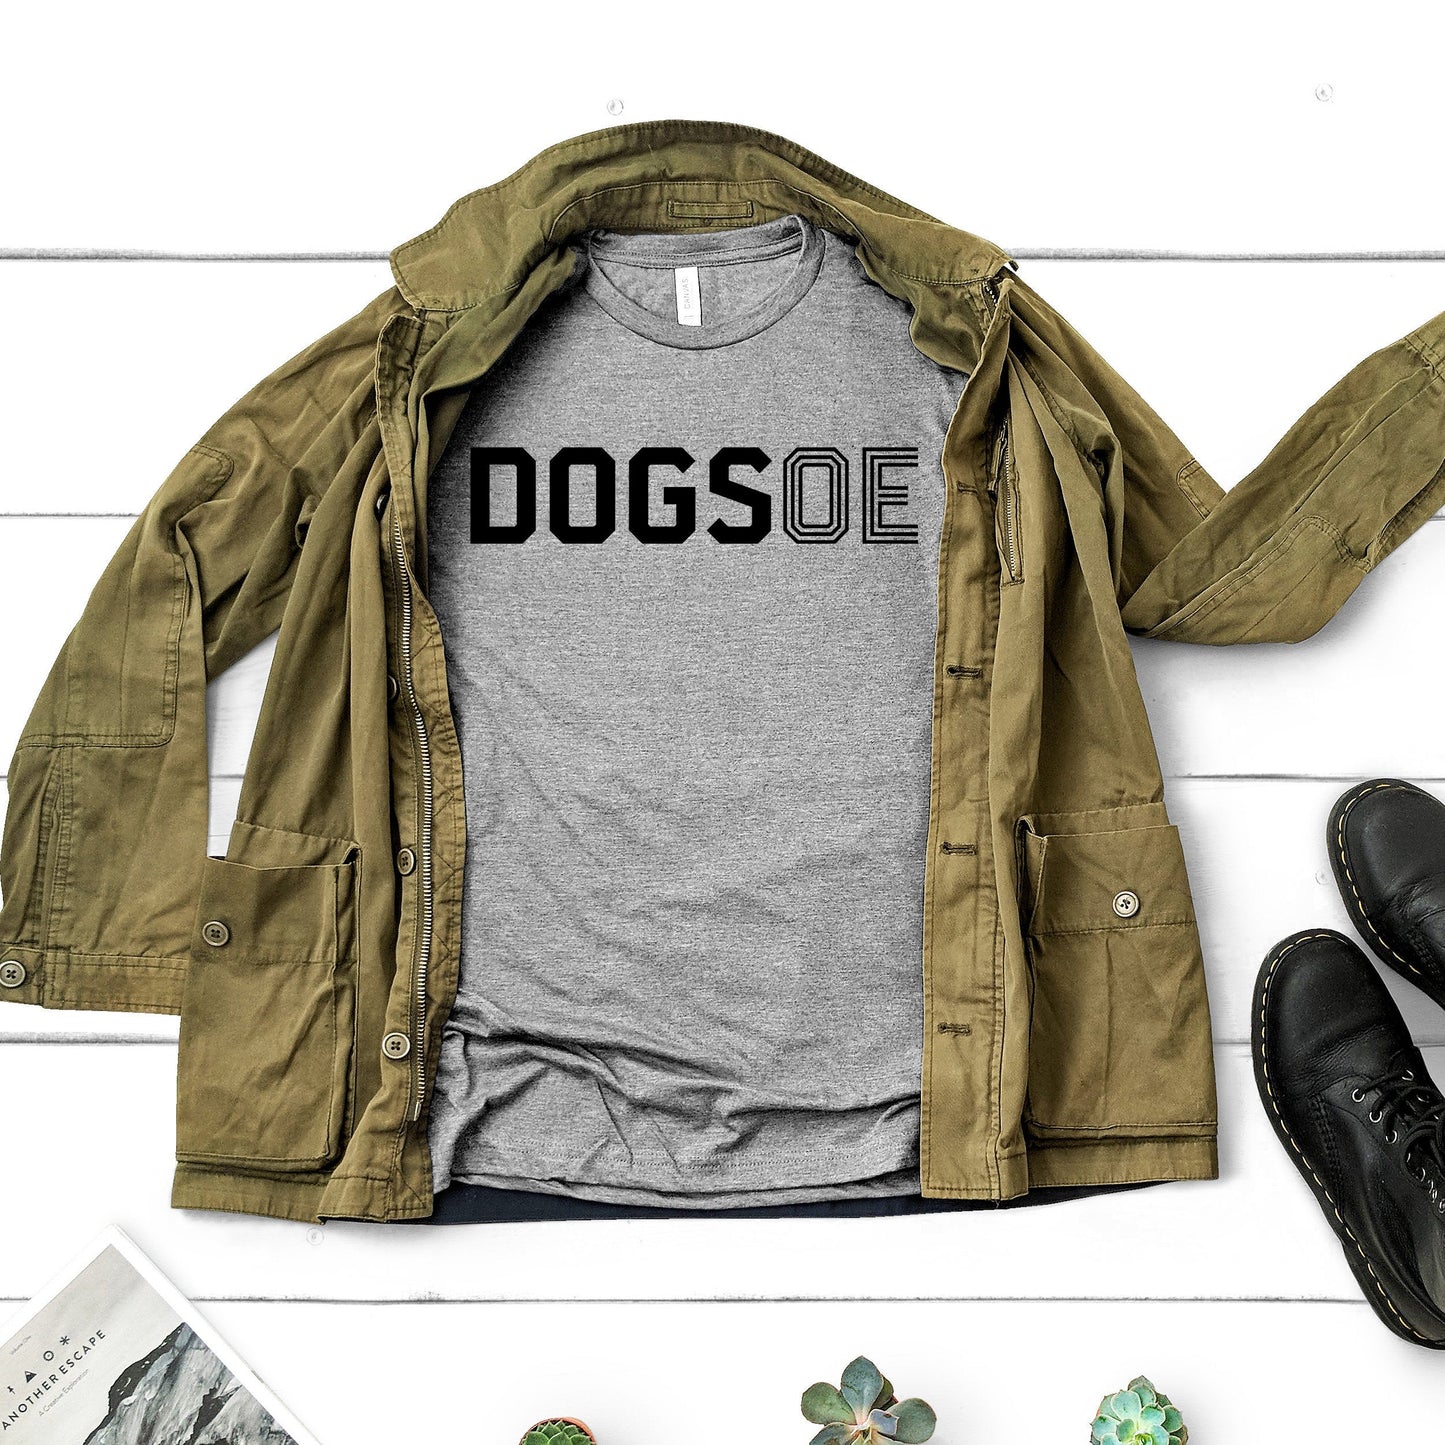 DOGS OE | Dog Lovers Shirt